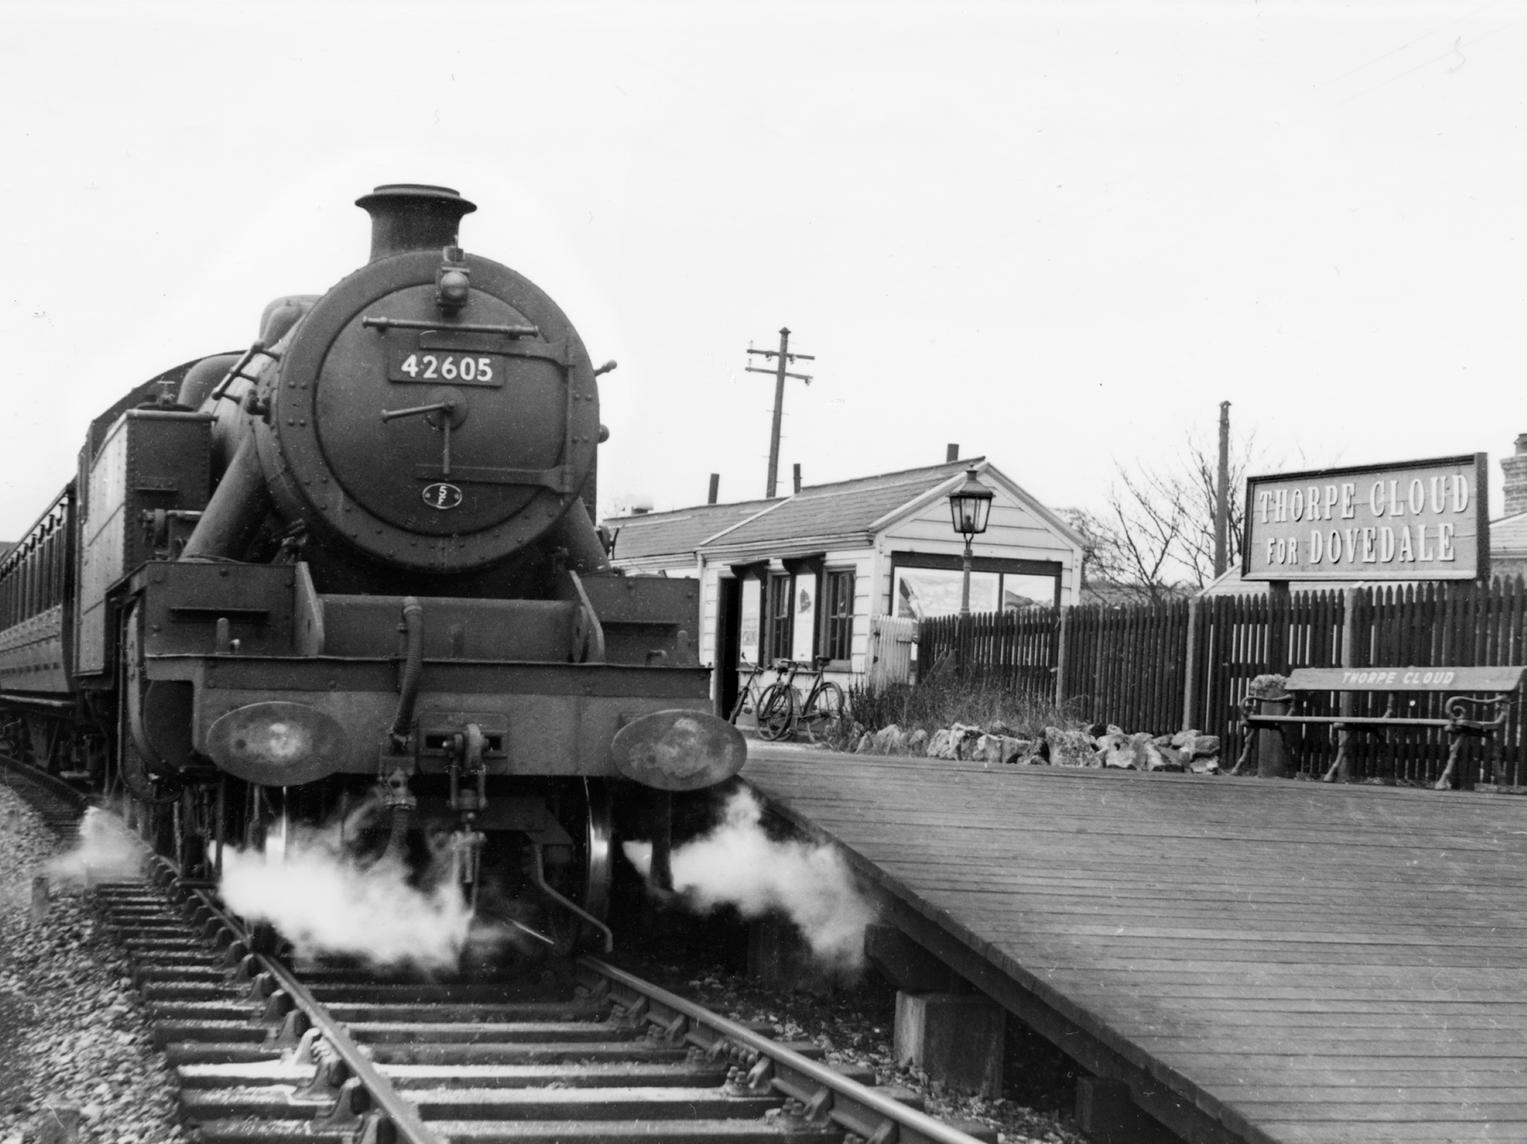 Thorpe Cloud, April 1952